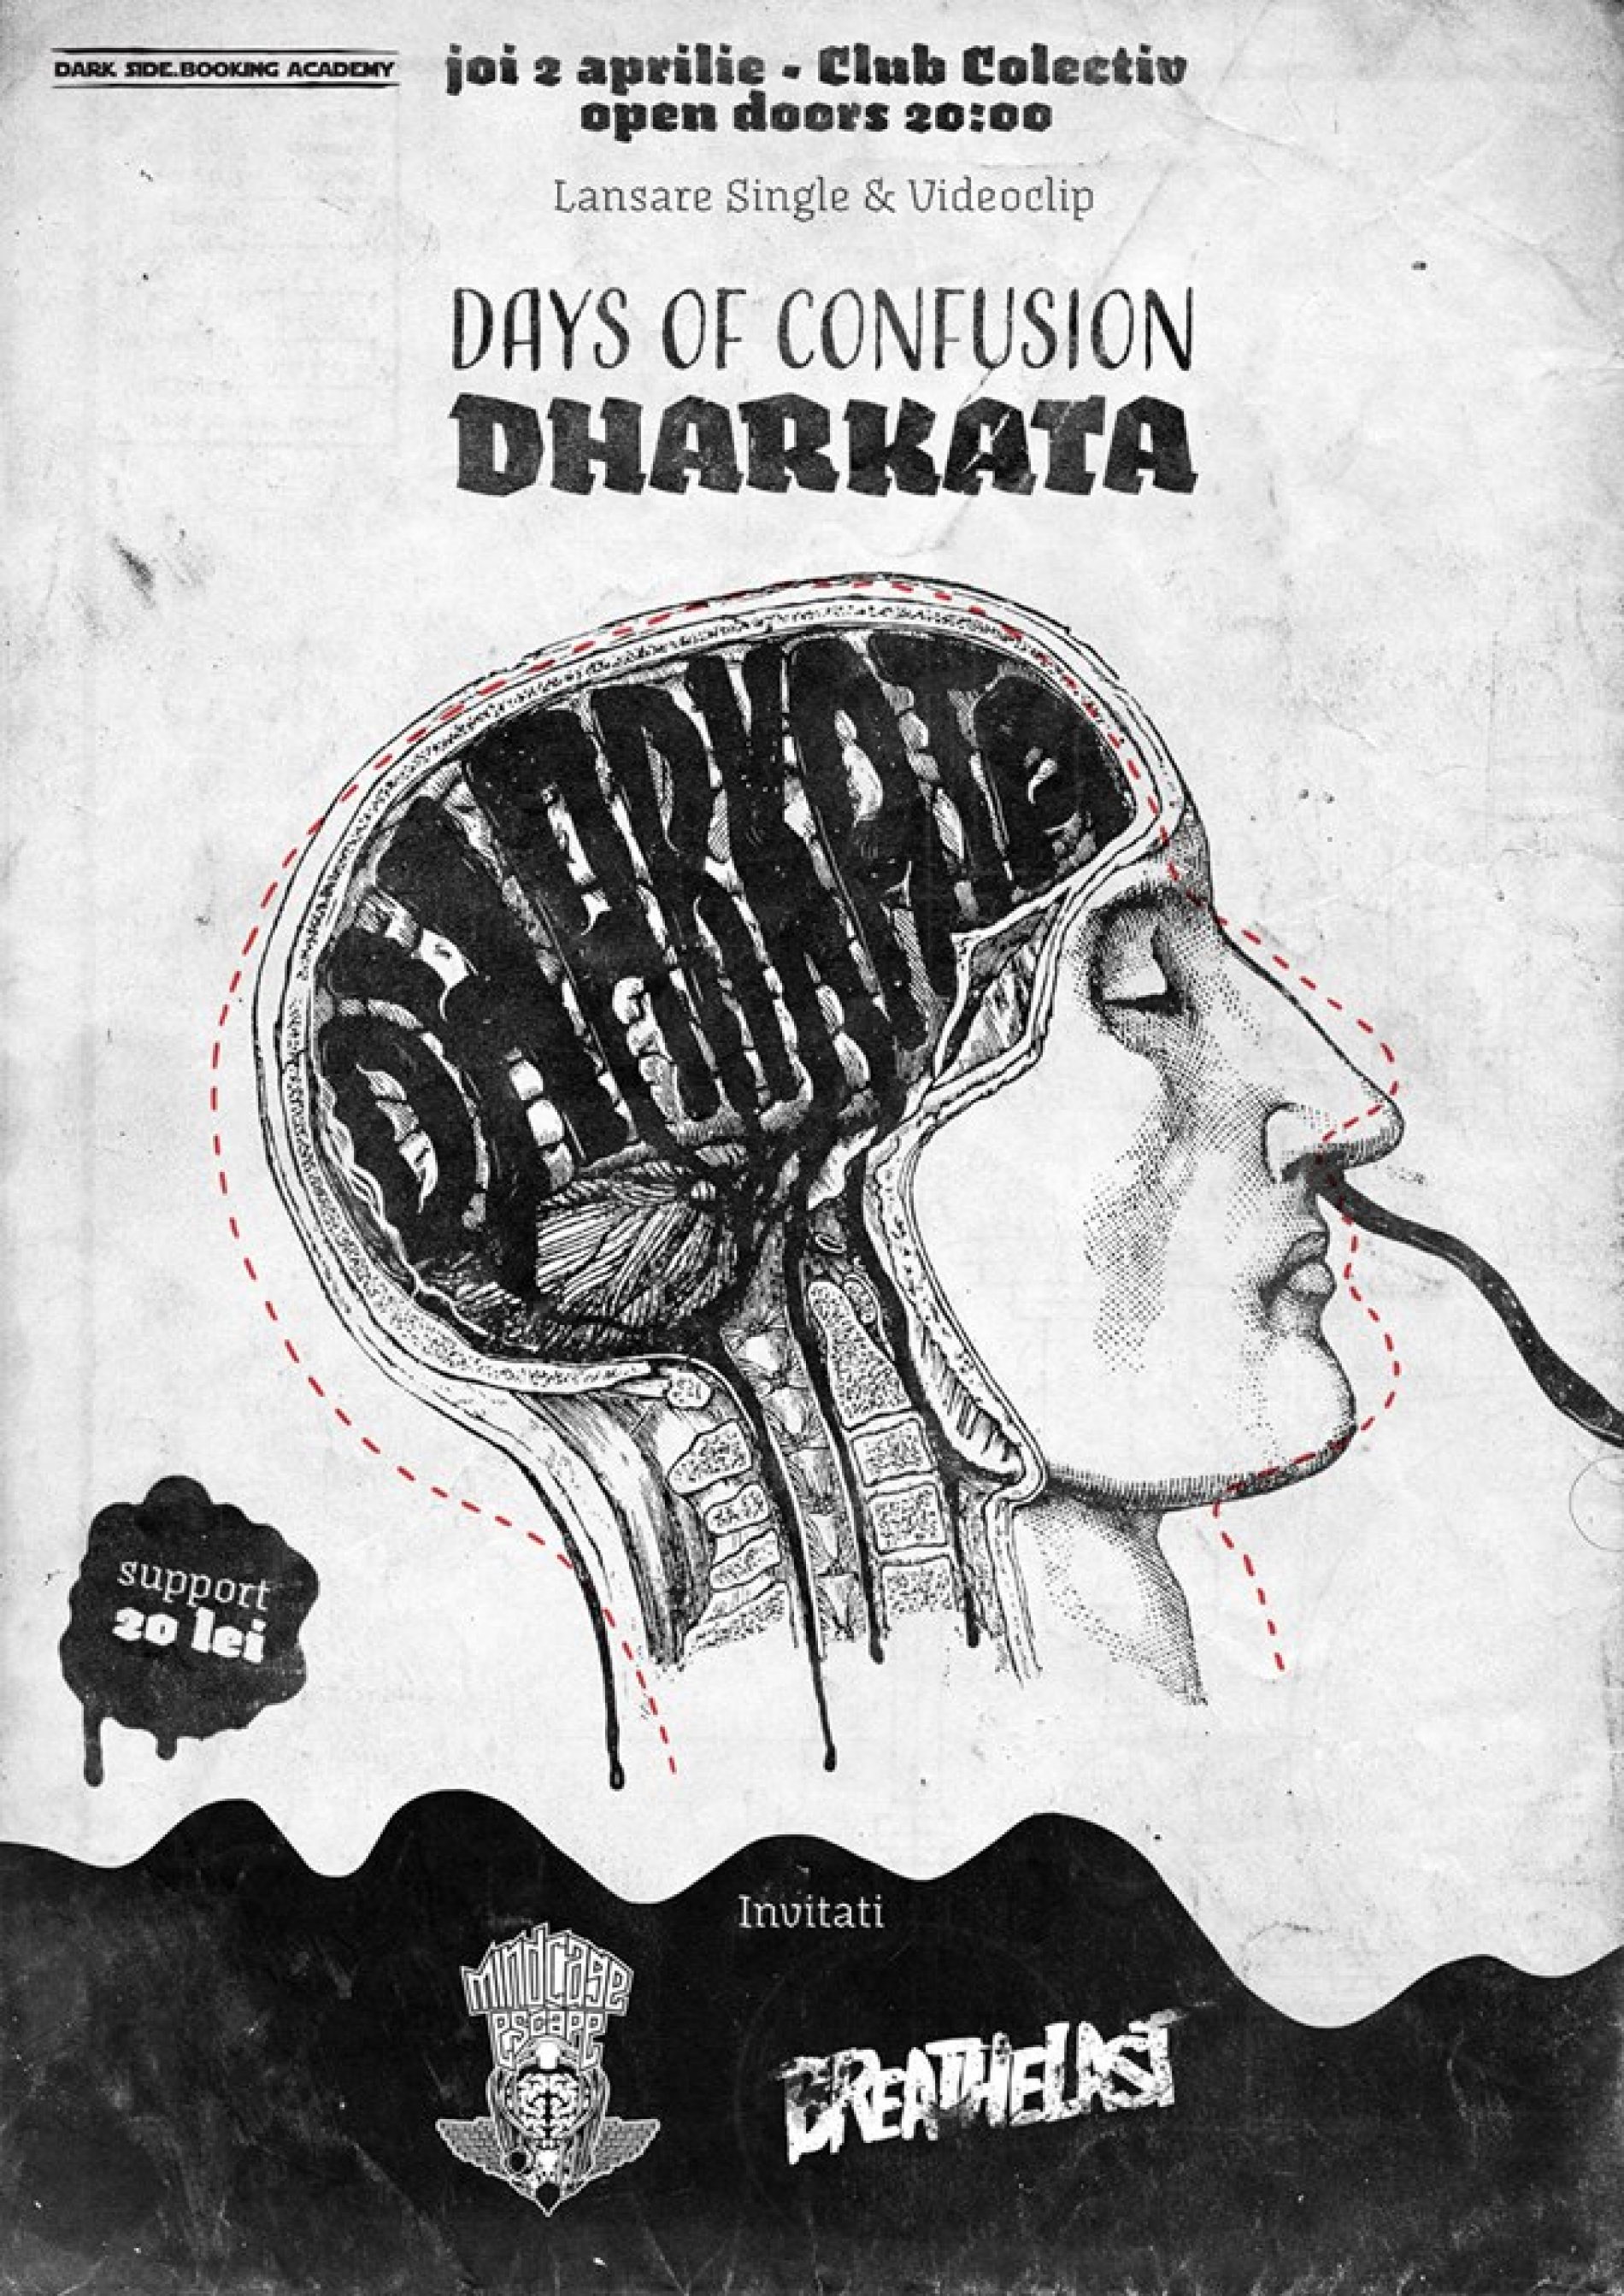 Concert lansare Days of Confusion: single nou & videoclip DHARKATA